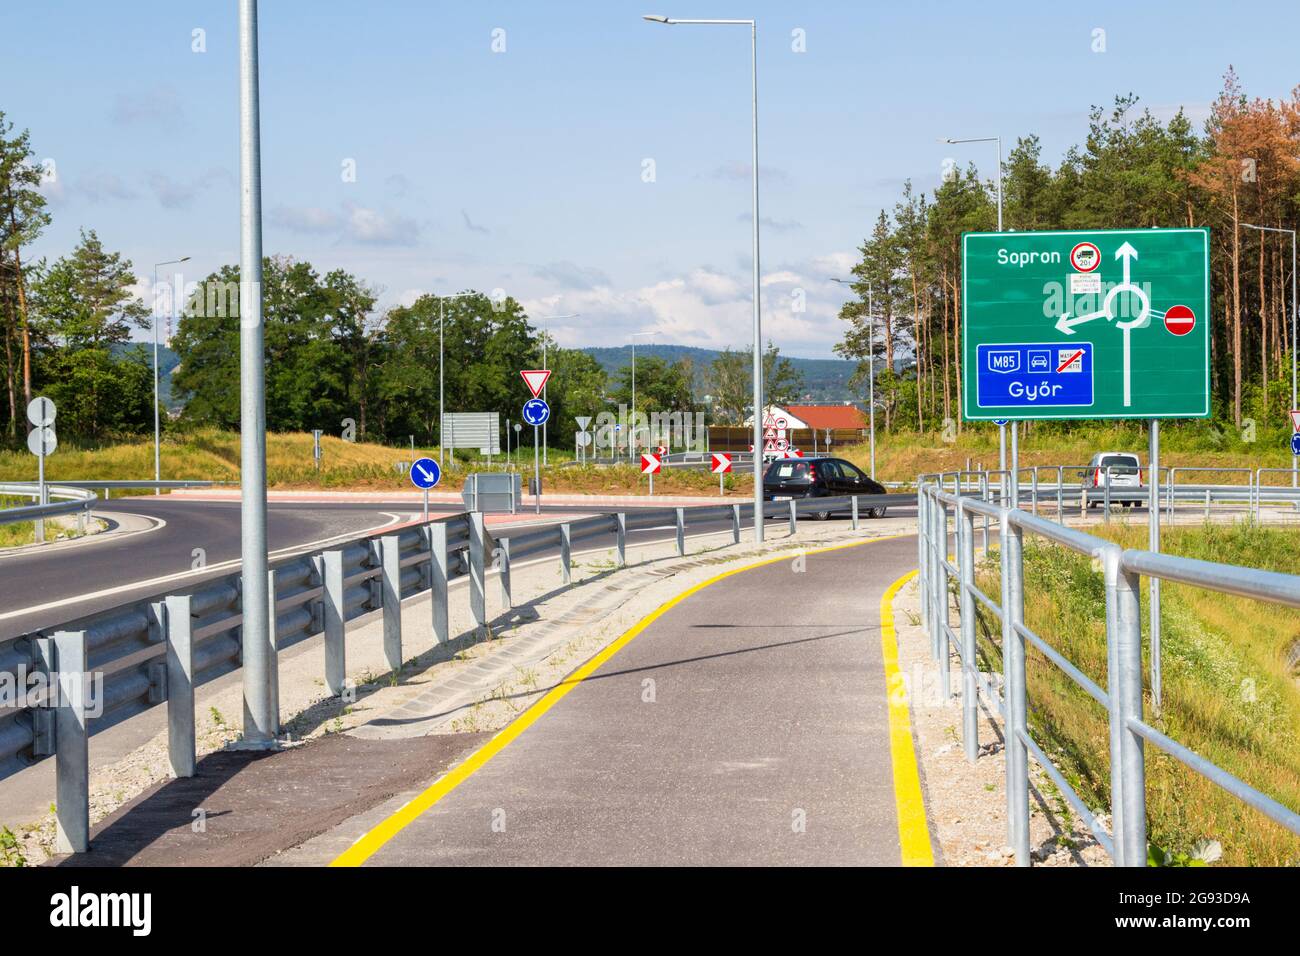 Kreisverkehr Kreuzung der Autobahn M85 bei Balfi ut mit Fahrradweg, Sopron, Ungarn Stockfoto